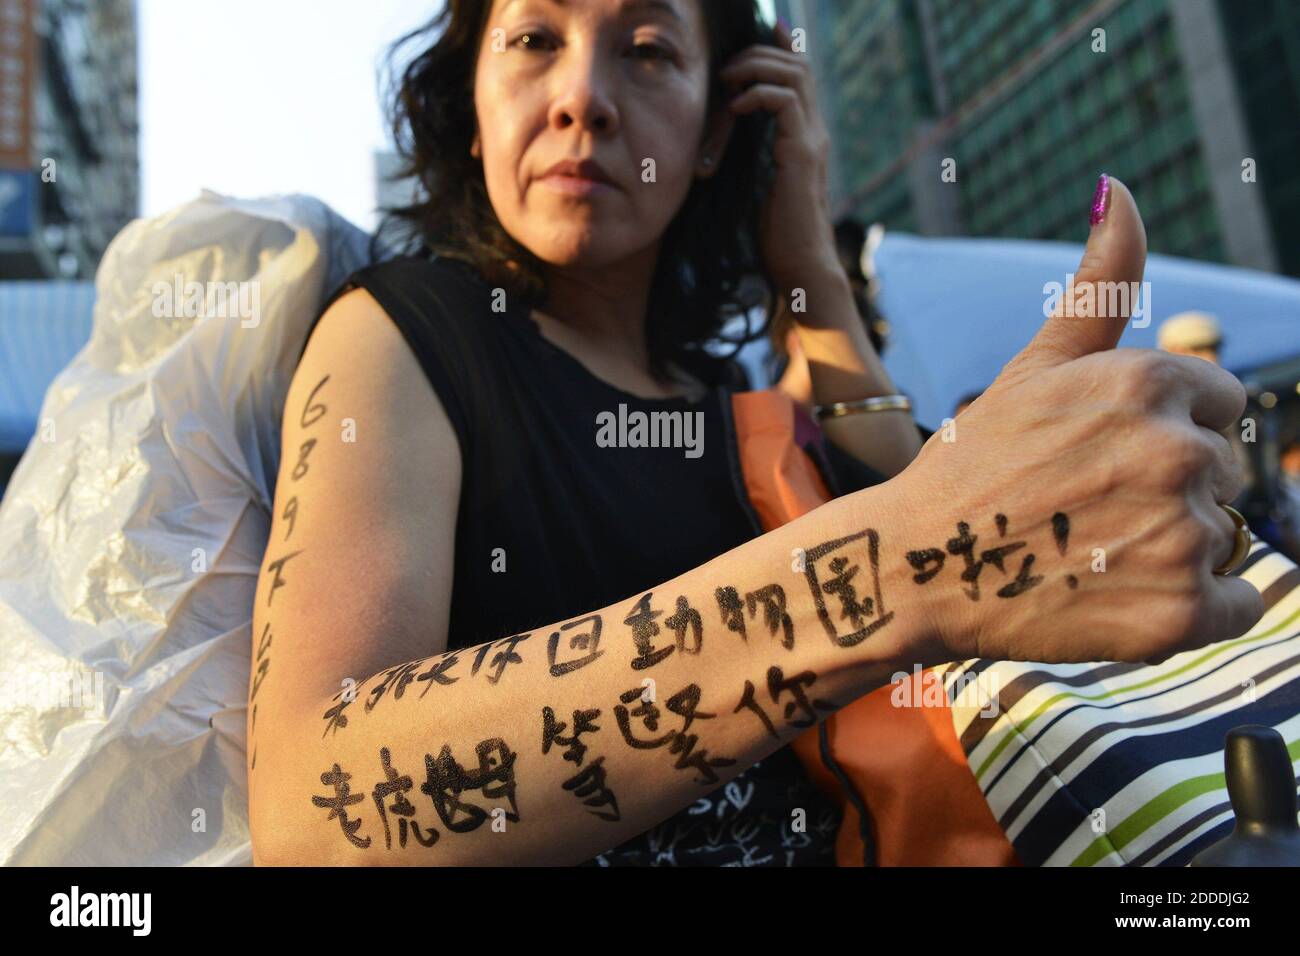 PAS DE FILM, PAS DE VIDÉO, pas de télévision, PAS DE DOCUMENTAIRE - Joyce Ho, qui a déclaré qu'elle soutient les manifestants de Hong Kong depuis trois jours de suite, montre un « tatouage » qui, en chinois, exhorte le directeur général de Hong Kong Leung Chun-Ying à « retourner au zoo. La femme Tiger vous attend.' Ho est vu en visite sur le site de protestation pro-démocratie à Mong Kok, Hong Kong, le mardi 7 octobre 2014. Photo de Chris Stowers/MCT/ABACAPRESS.COM Banque D'Images